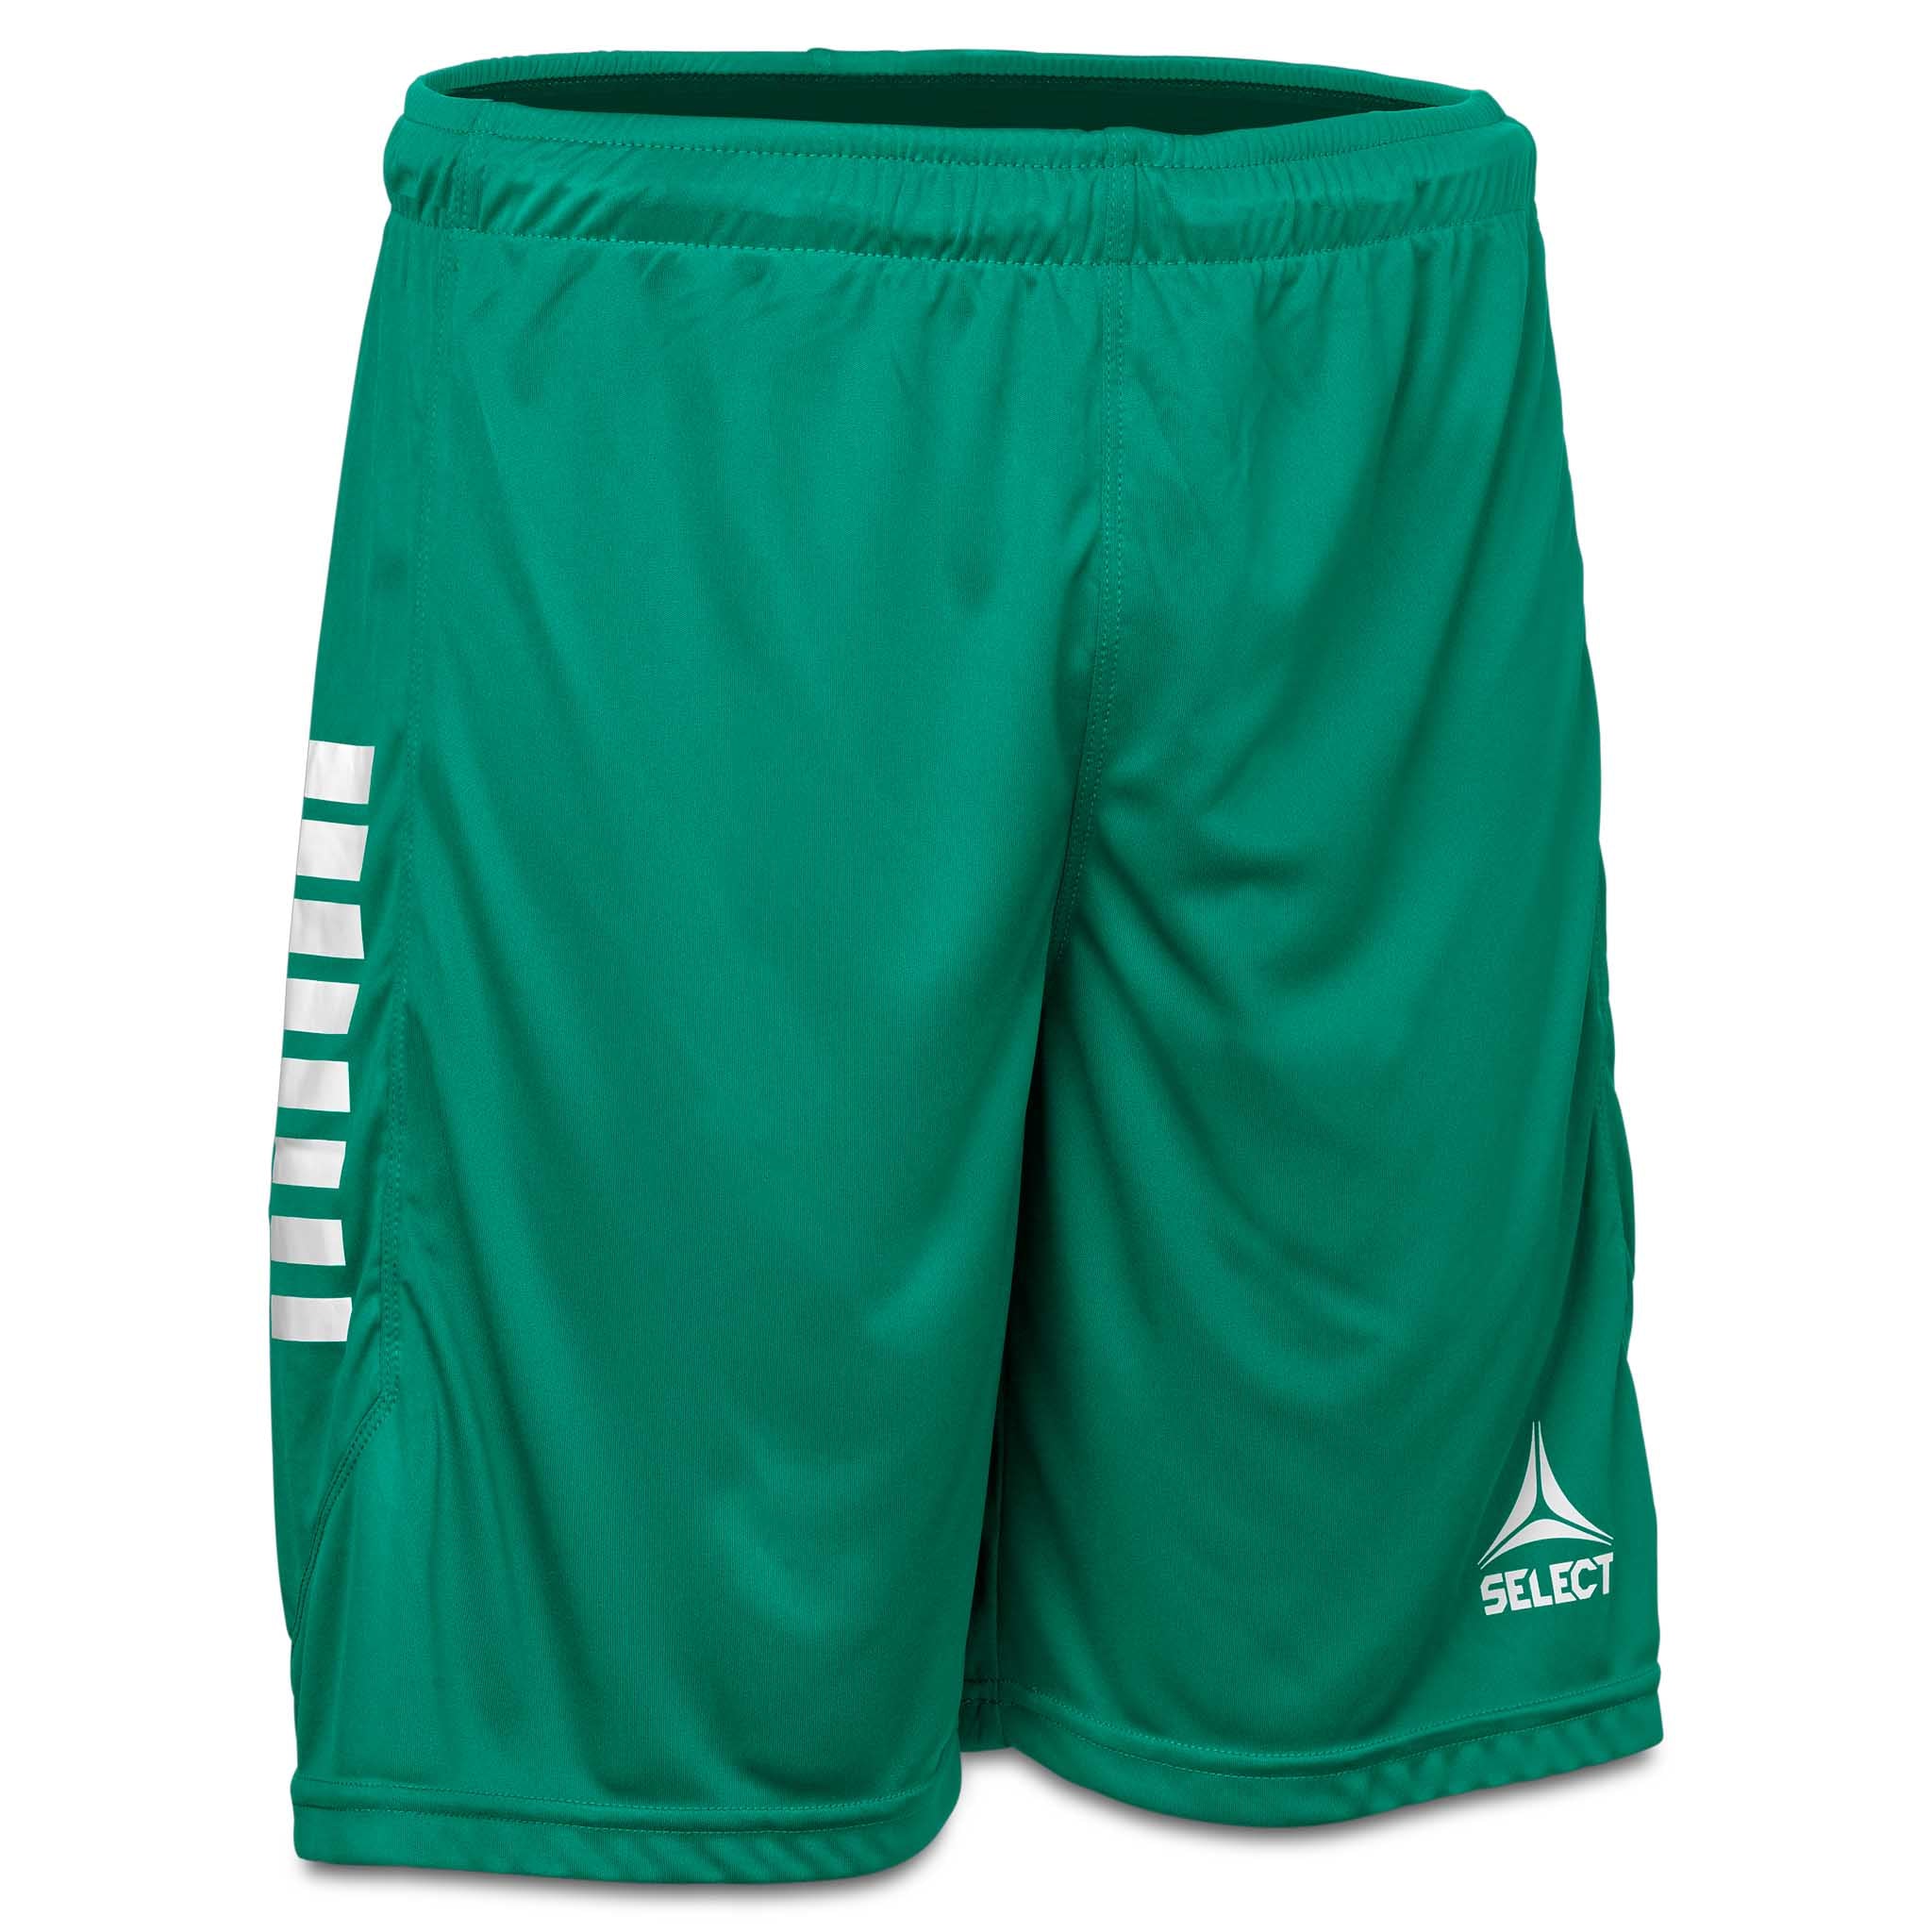 Monaco shorts - Børn #farve_grøn/hvid